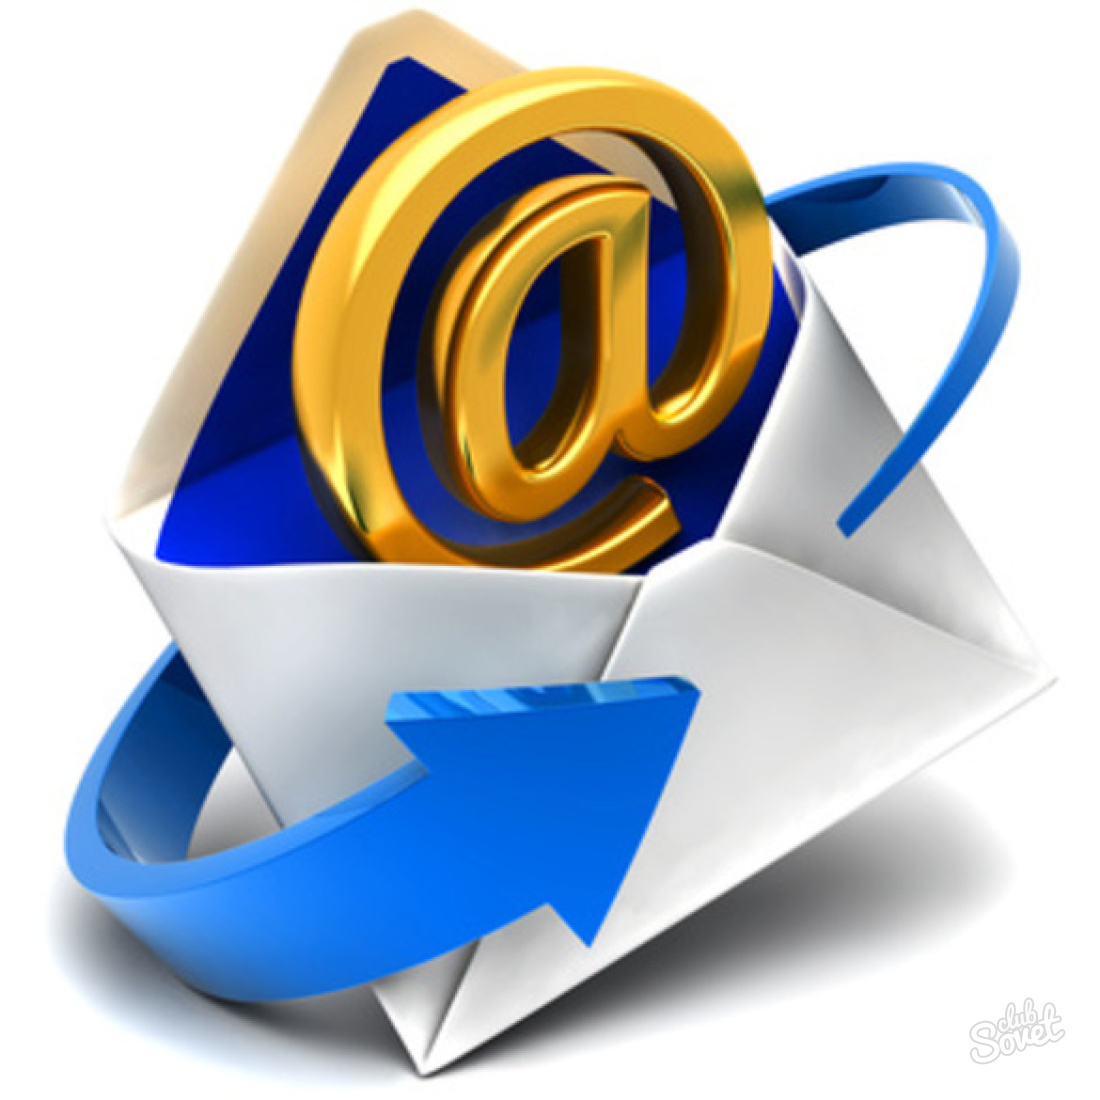 E-posta ücretsiz nasıl oluşturulur